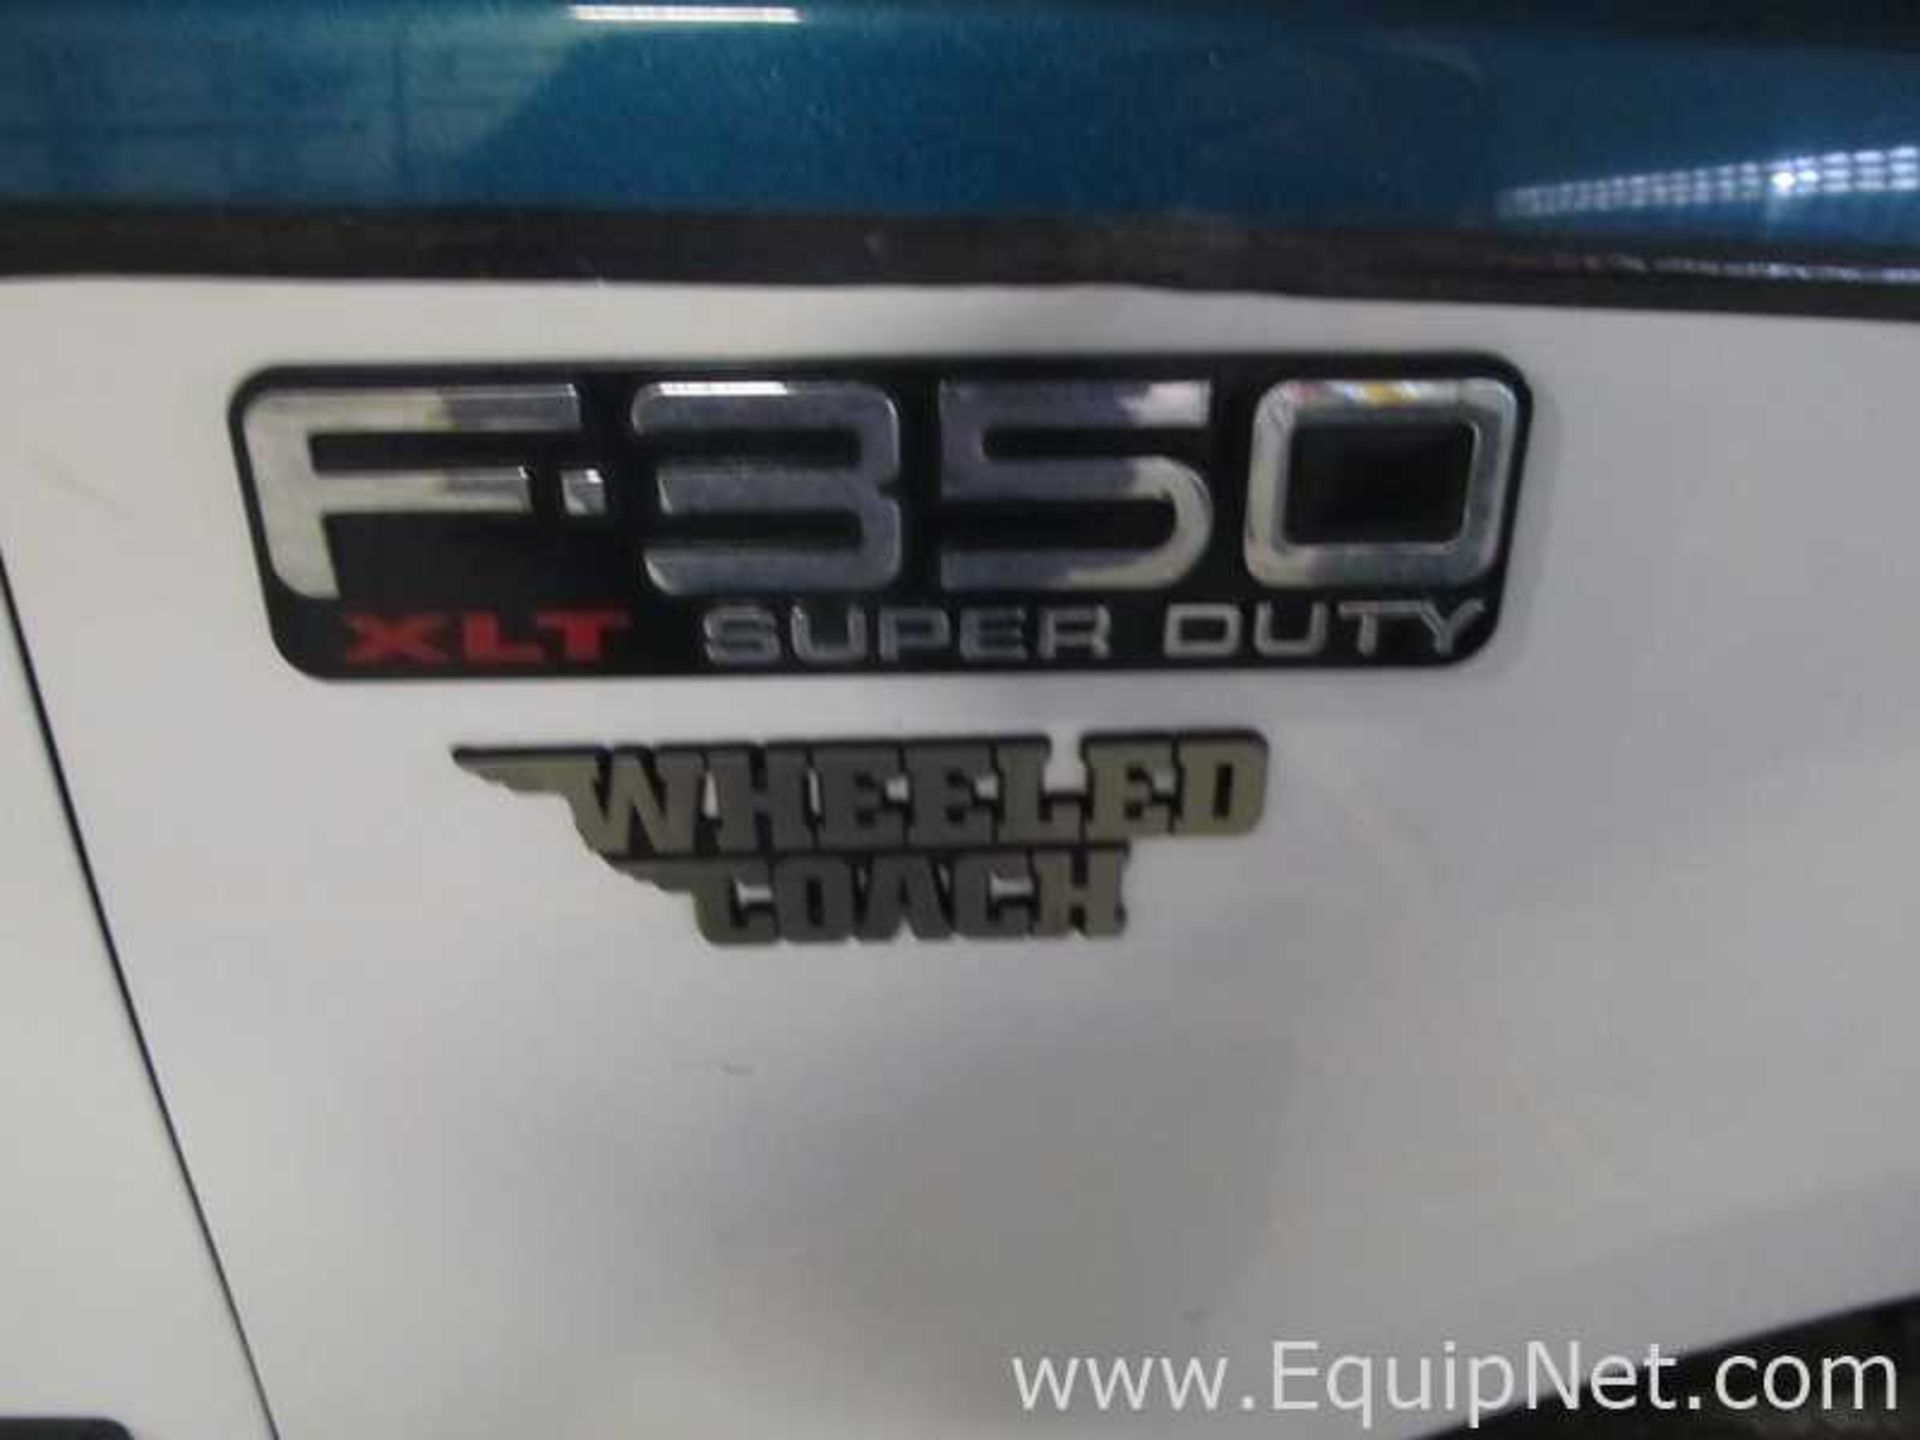 2000 Ford Wheeled Coach Ambulance - Image 10 of 11